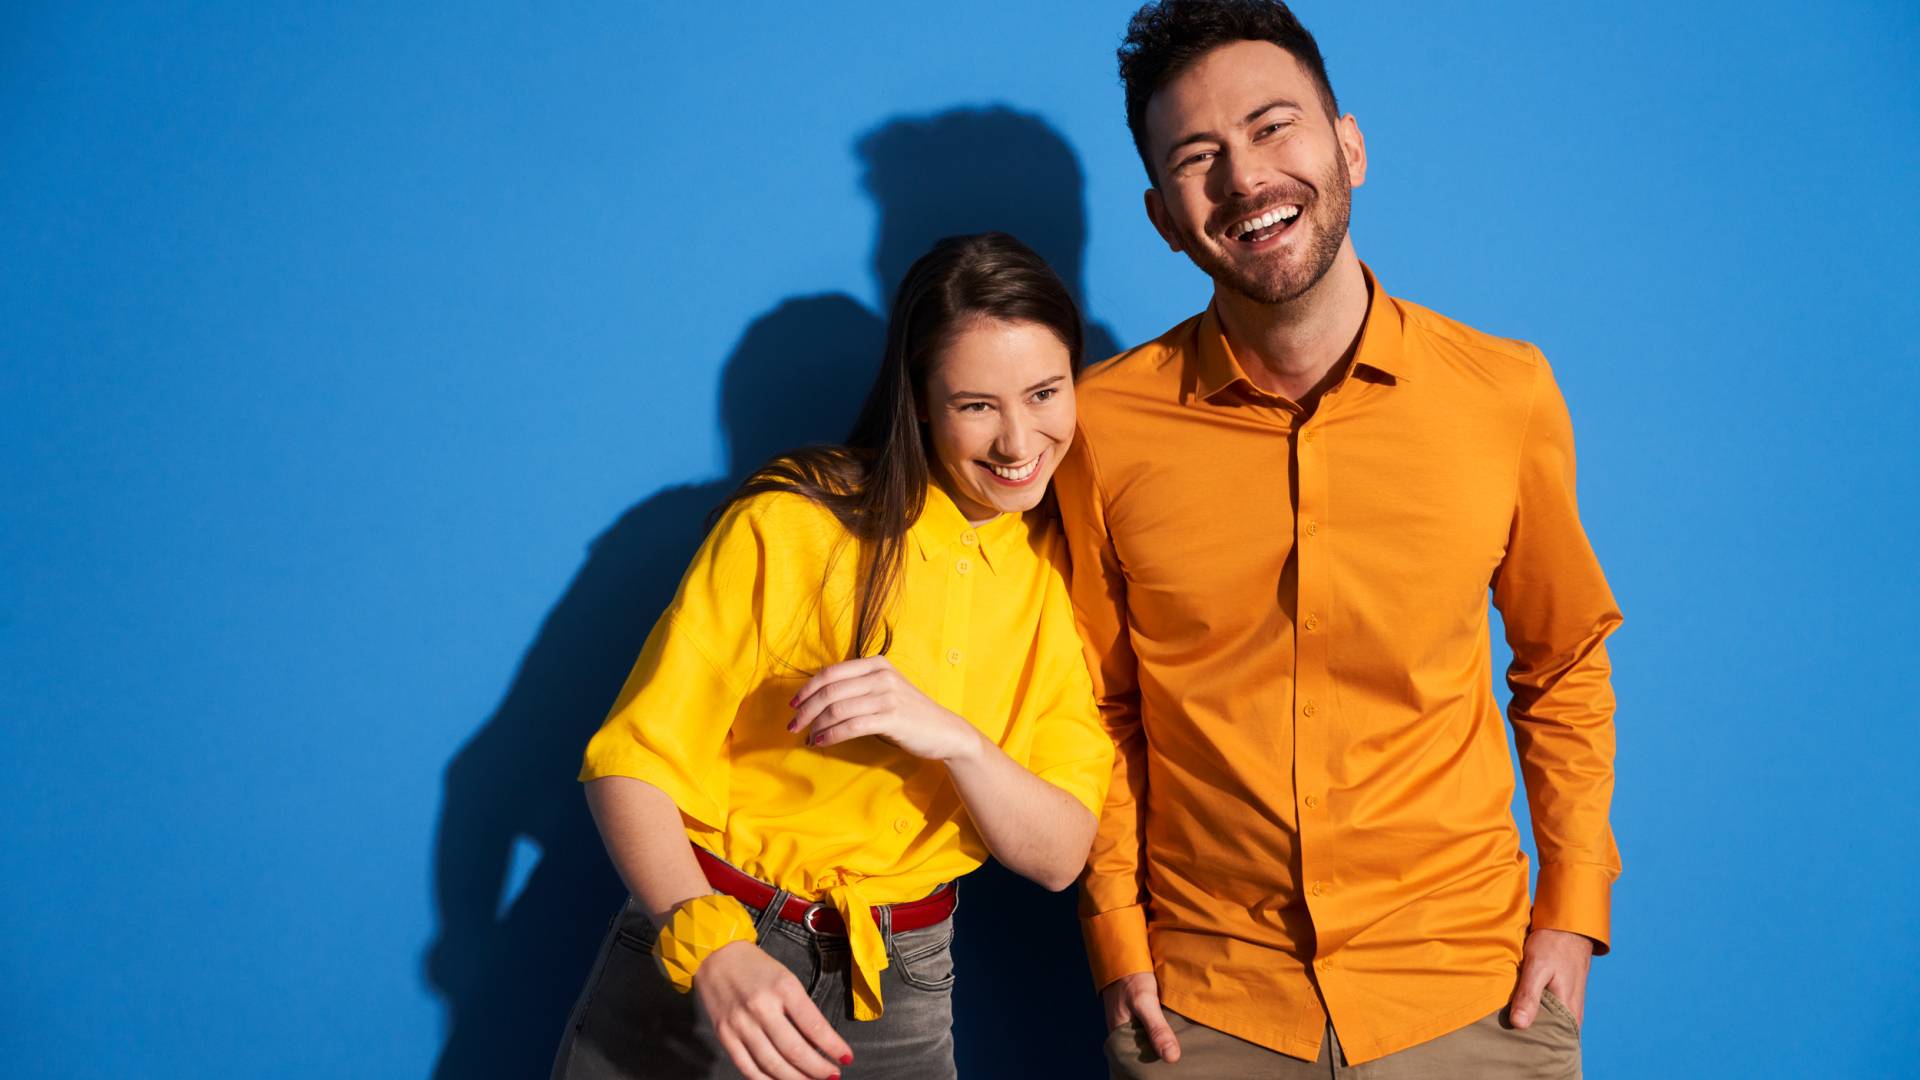 Portrait de deux jeunes souriants en chemise jaune, fond bleu